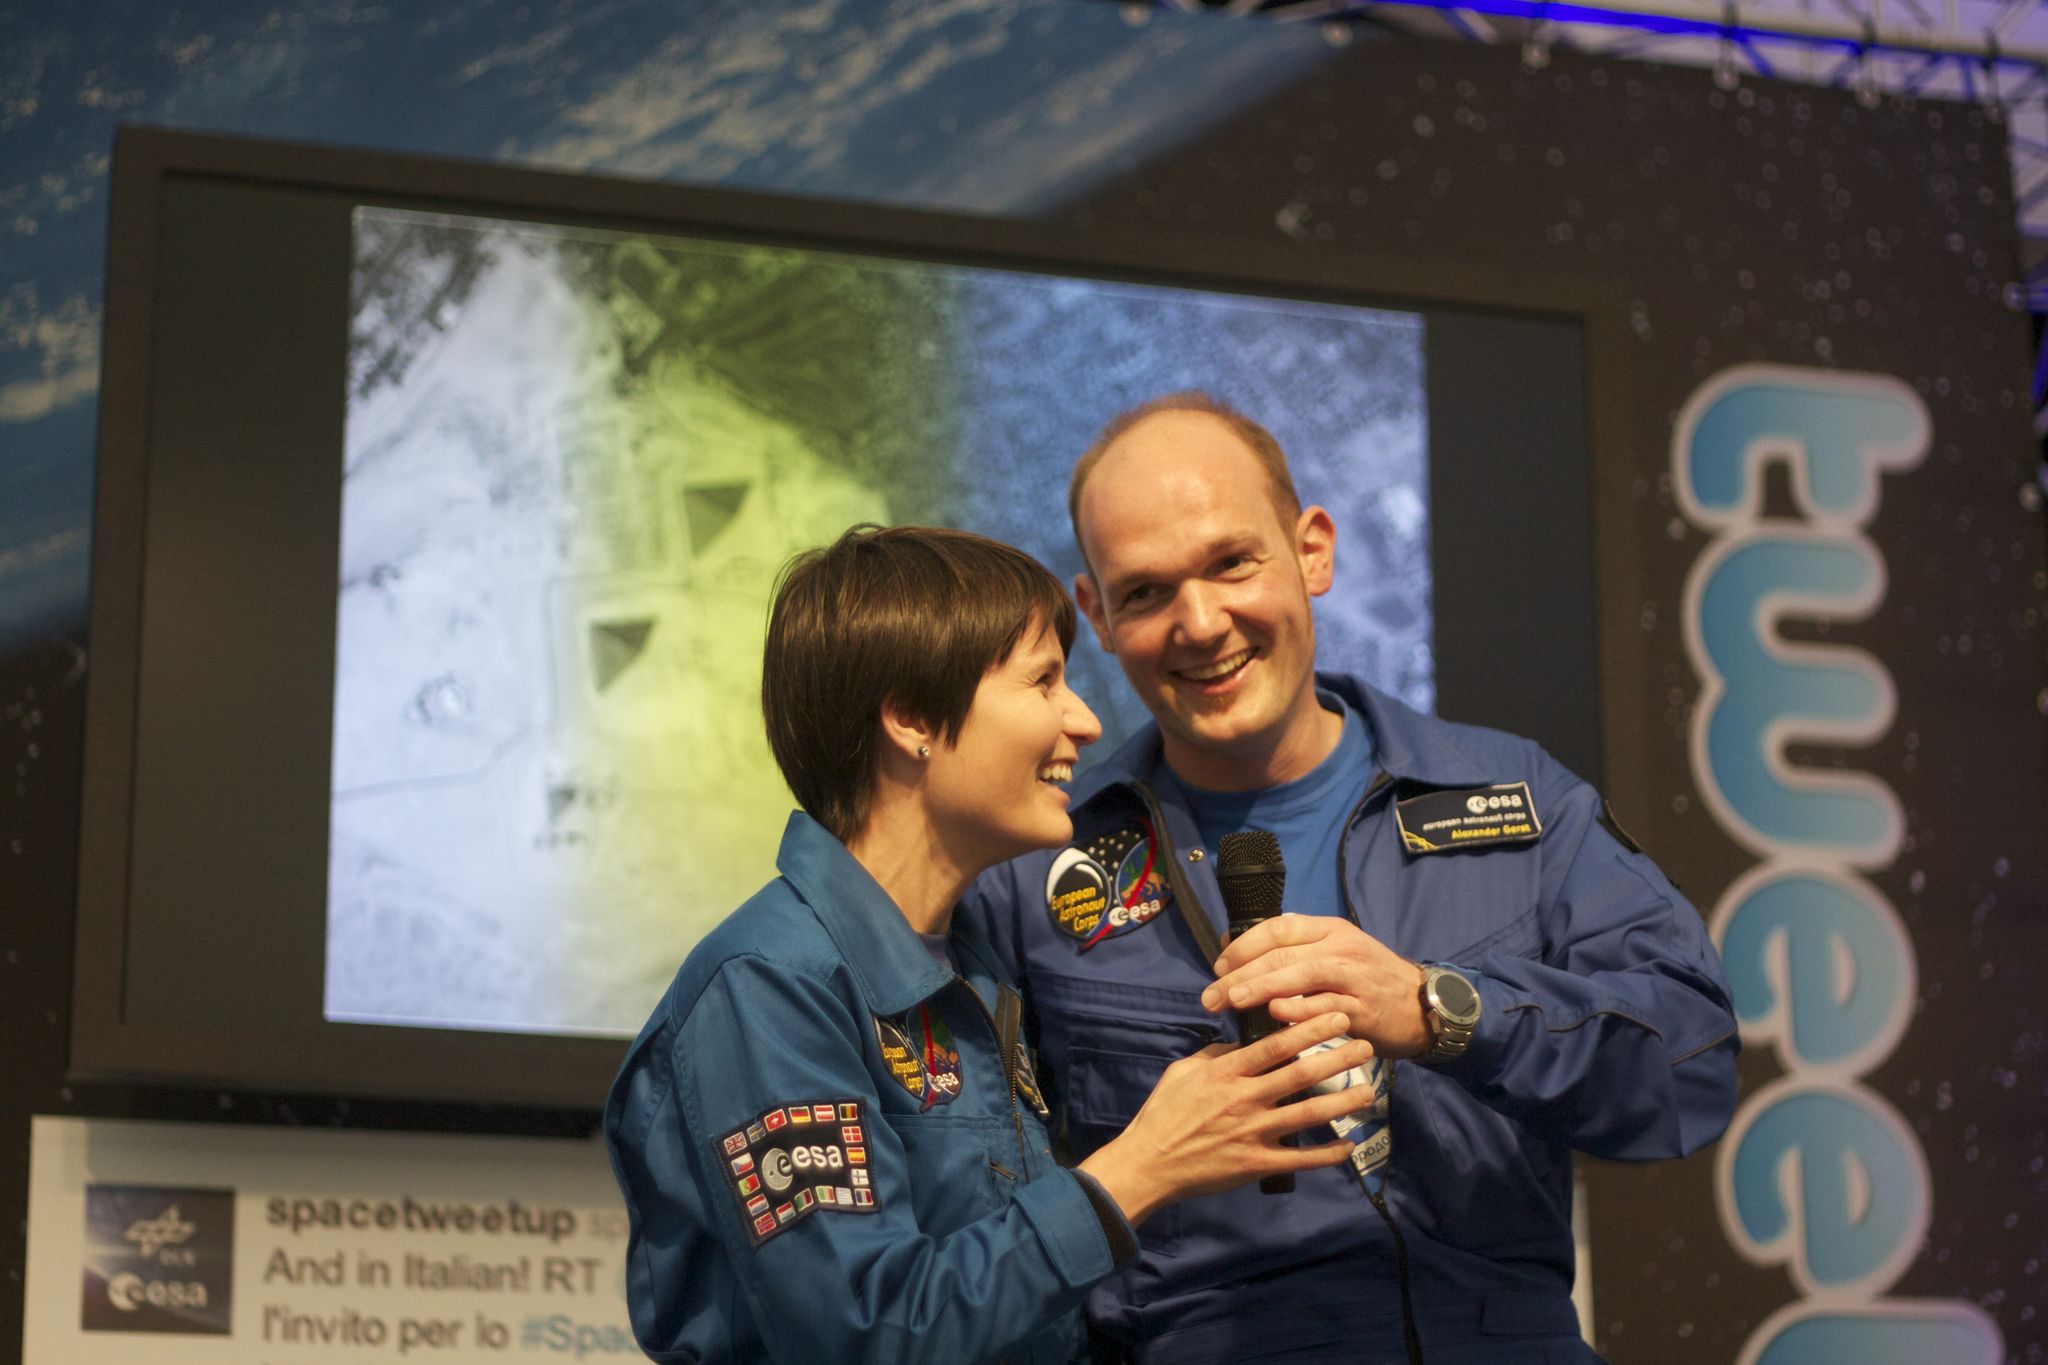 Samantha Cristoforetti et Alexander Gerst le 18 septembre 2011 lors du 1er SpaceTweetup organisé par l'ESA/DLR à Cologne, Allemagne (Crédits : nhaima sur flickr)